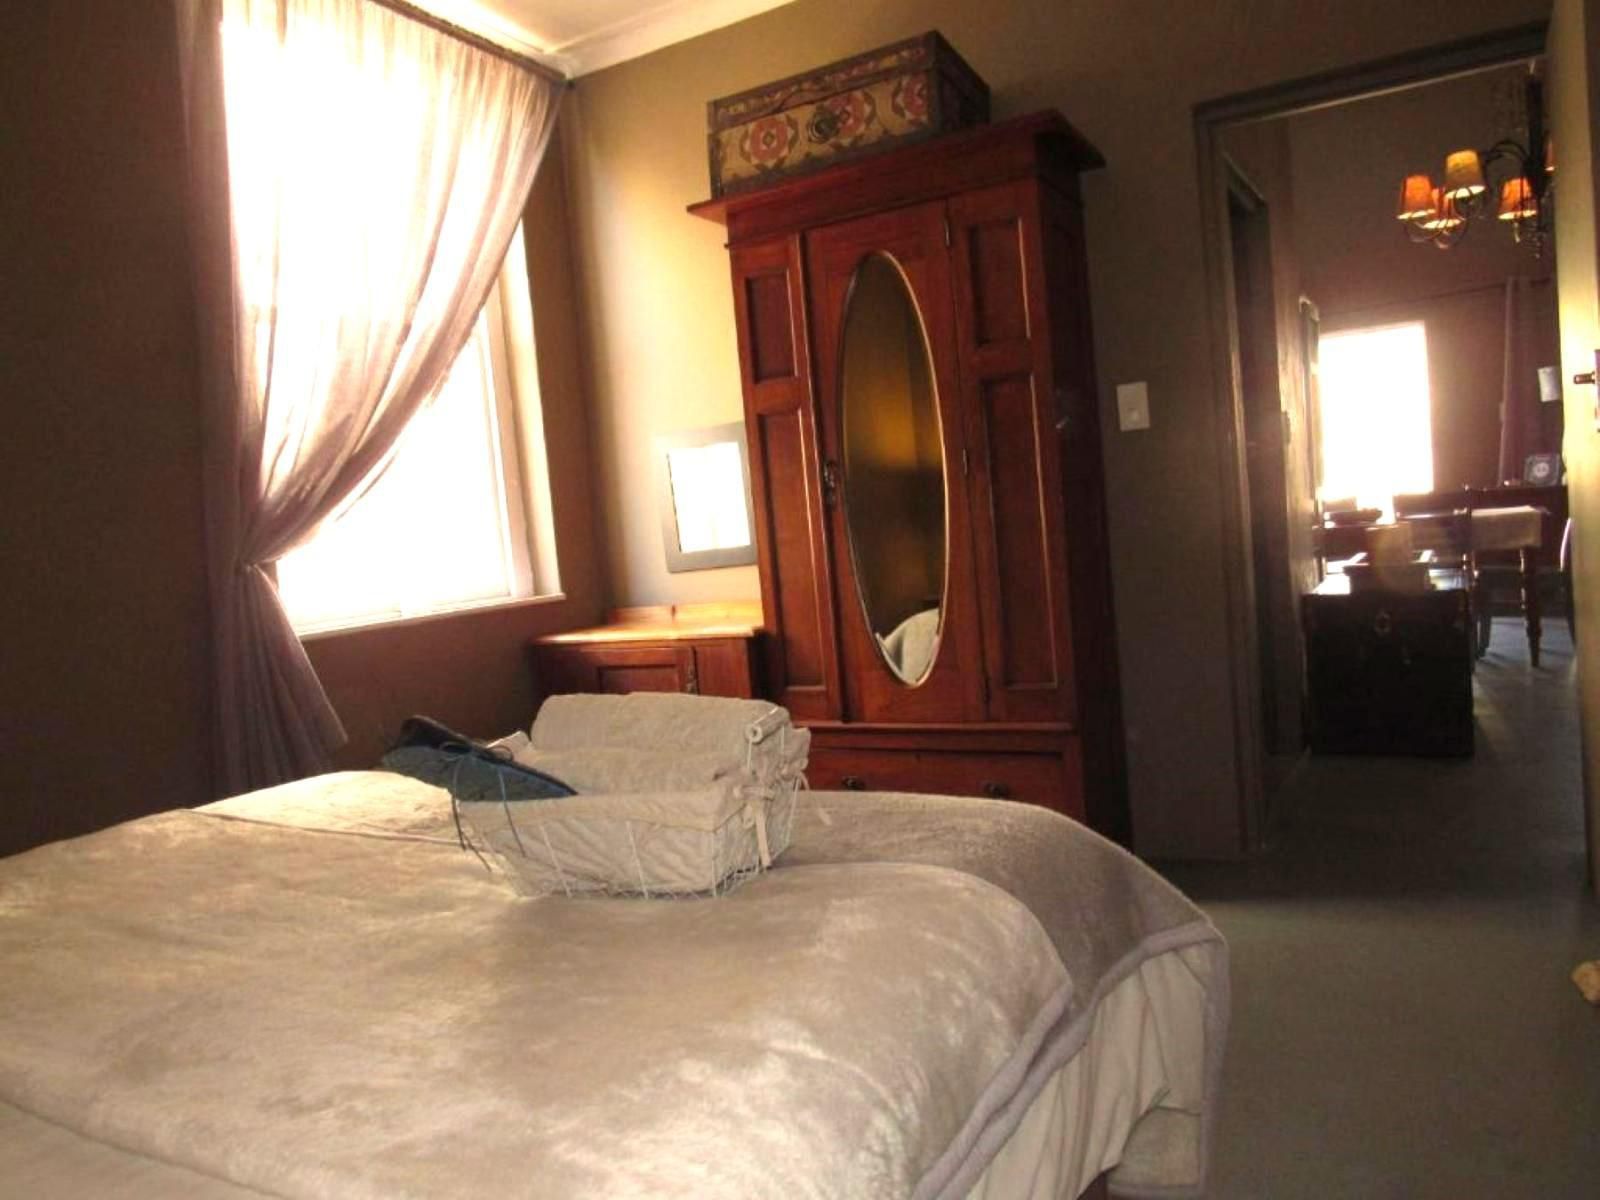 Bid Huisie Prince Albert Western Cape South Africa Bedroom